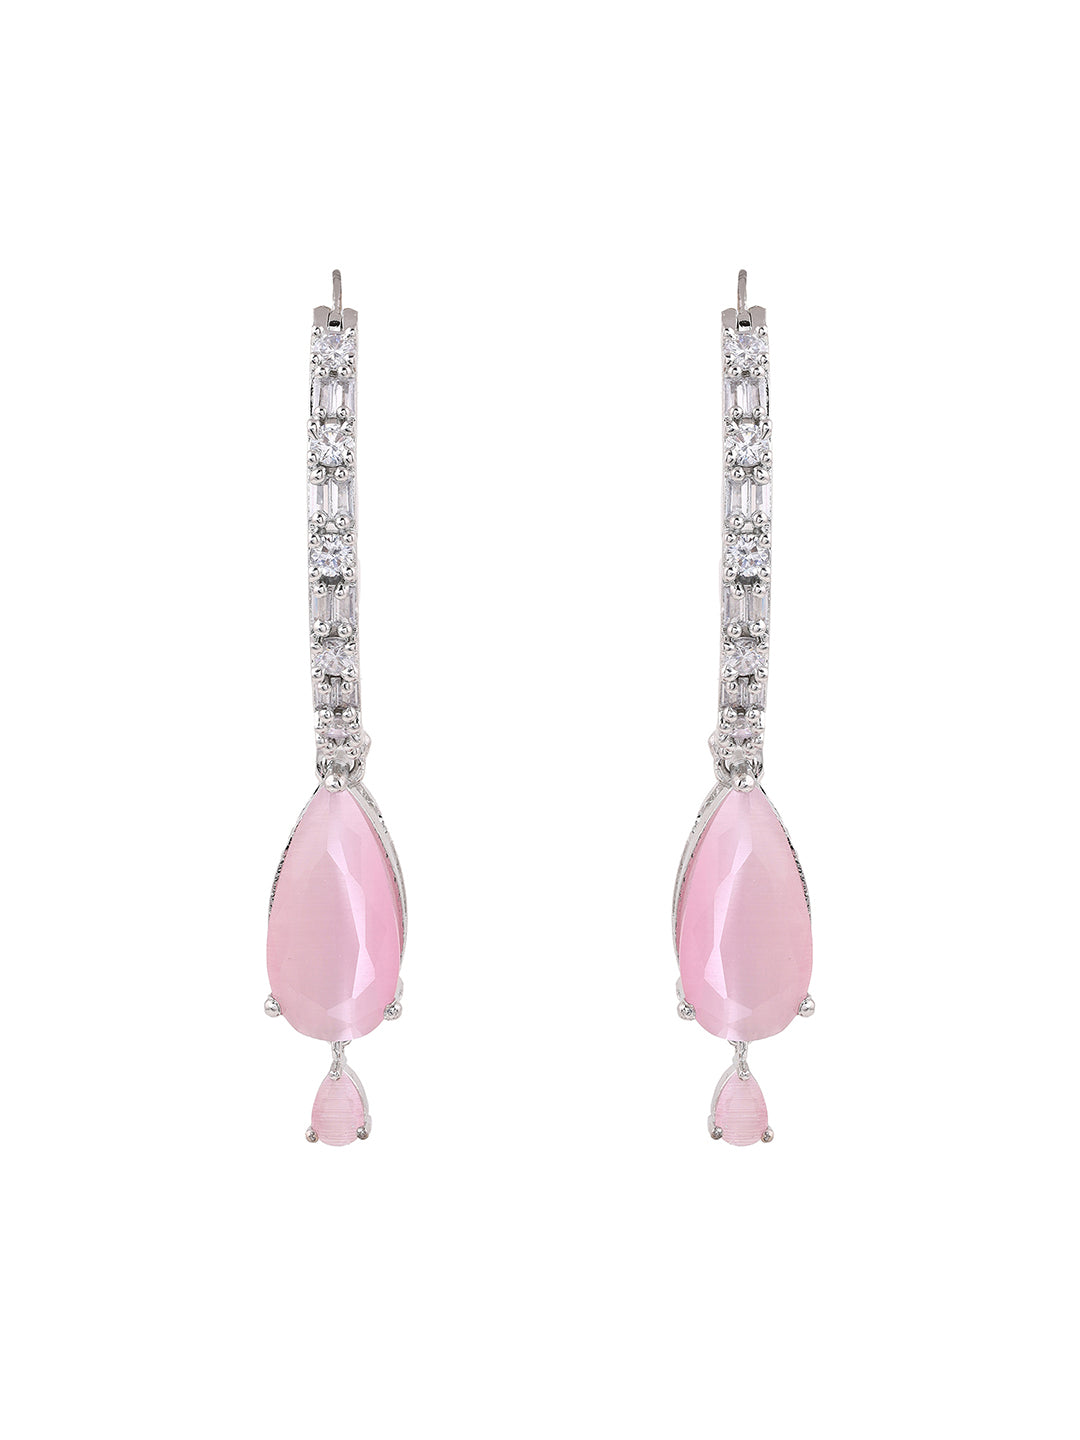 Priyaasi AD Baby Pink Drop Earrings